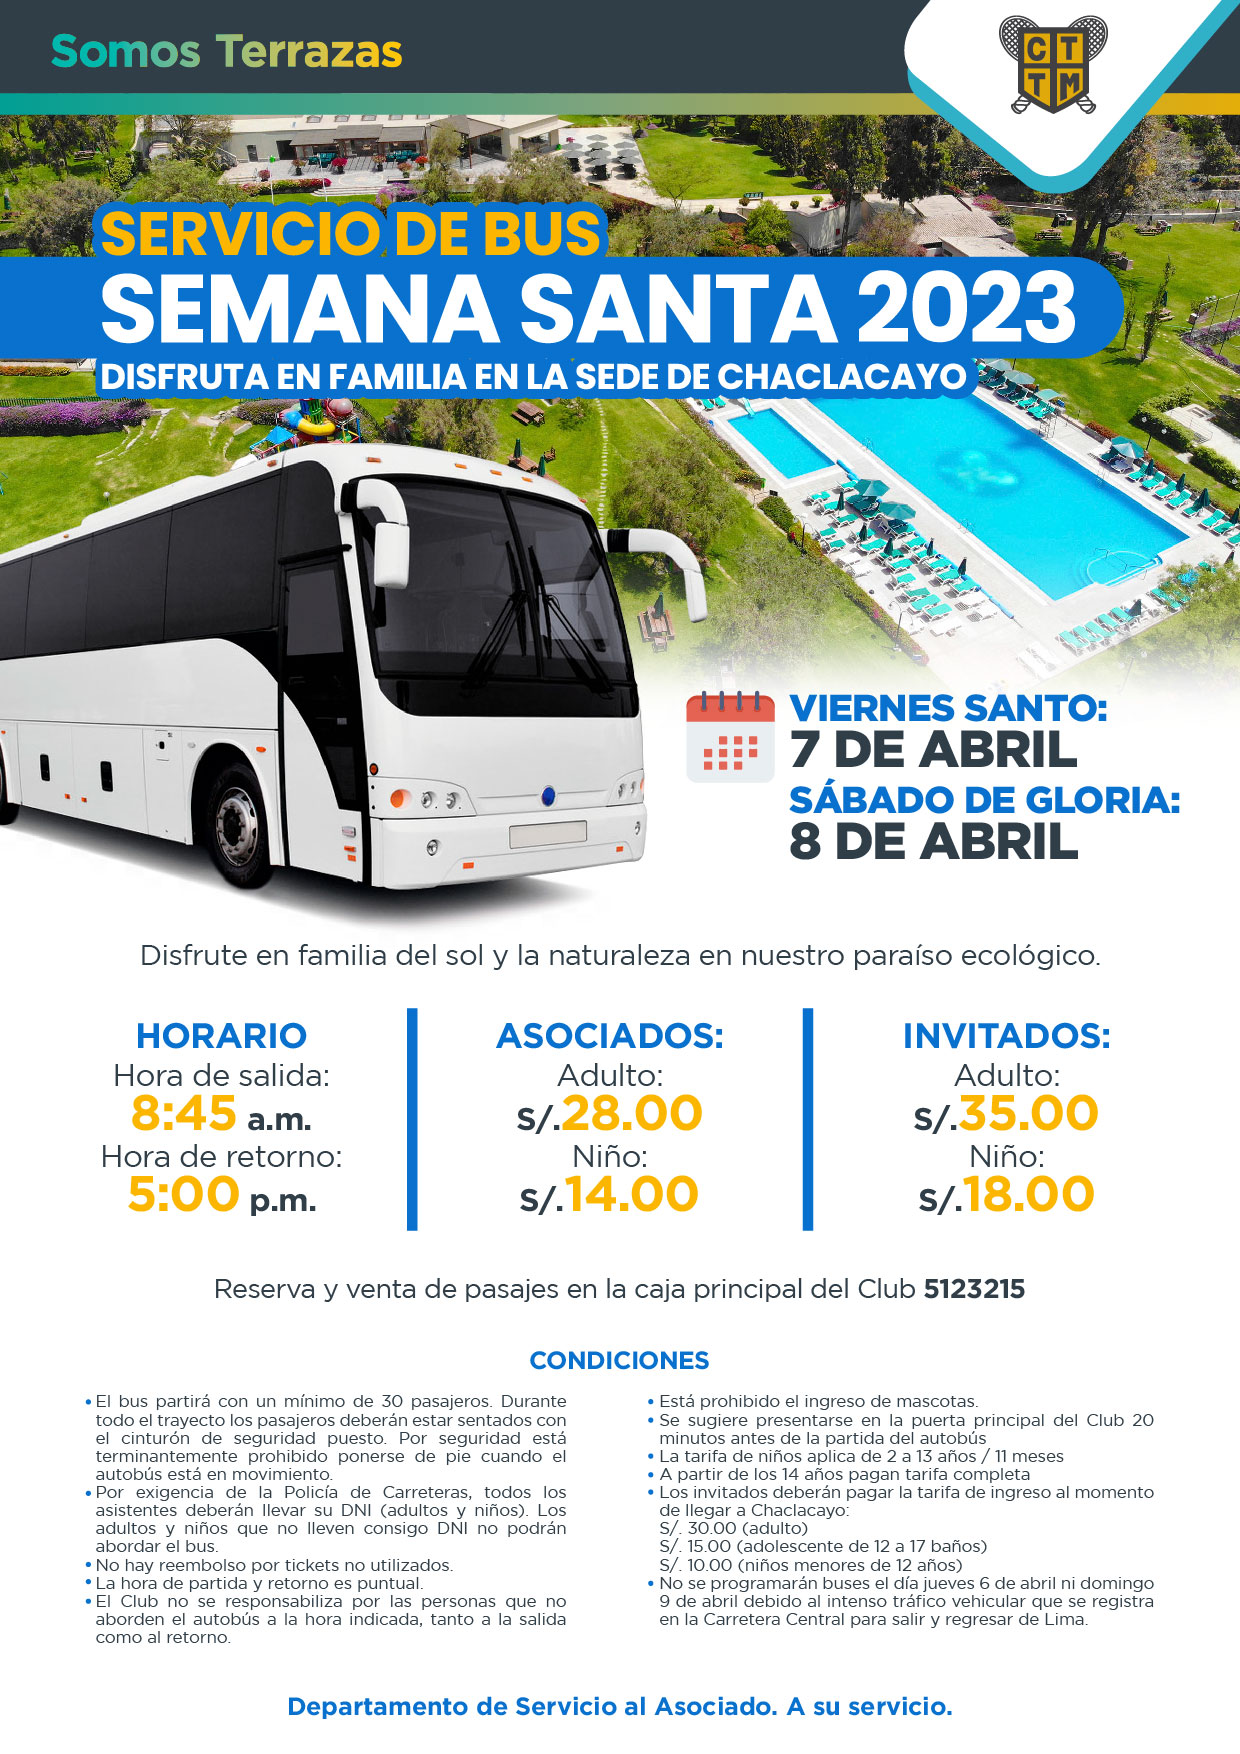 SERVICIO DE BUS SEMANA SANTA 2023 - DISFRUTA EN FAMILIA EN LA SEDE DE CHACLACAYO